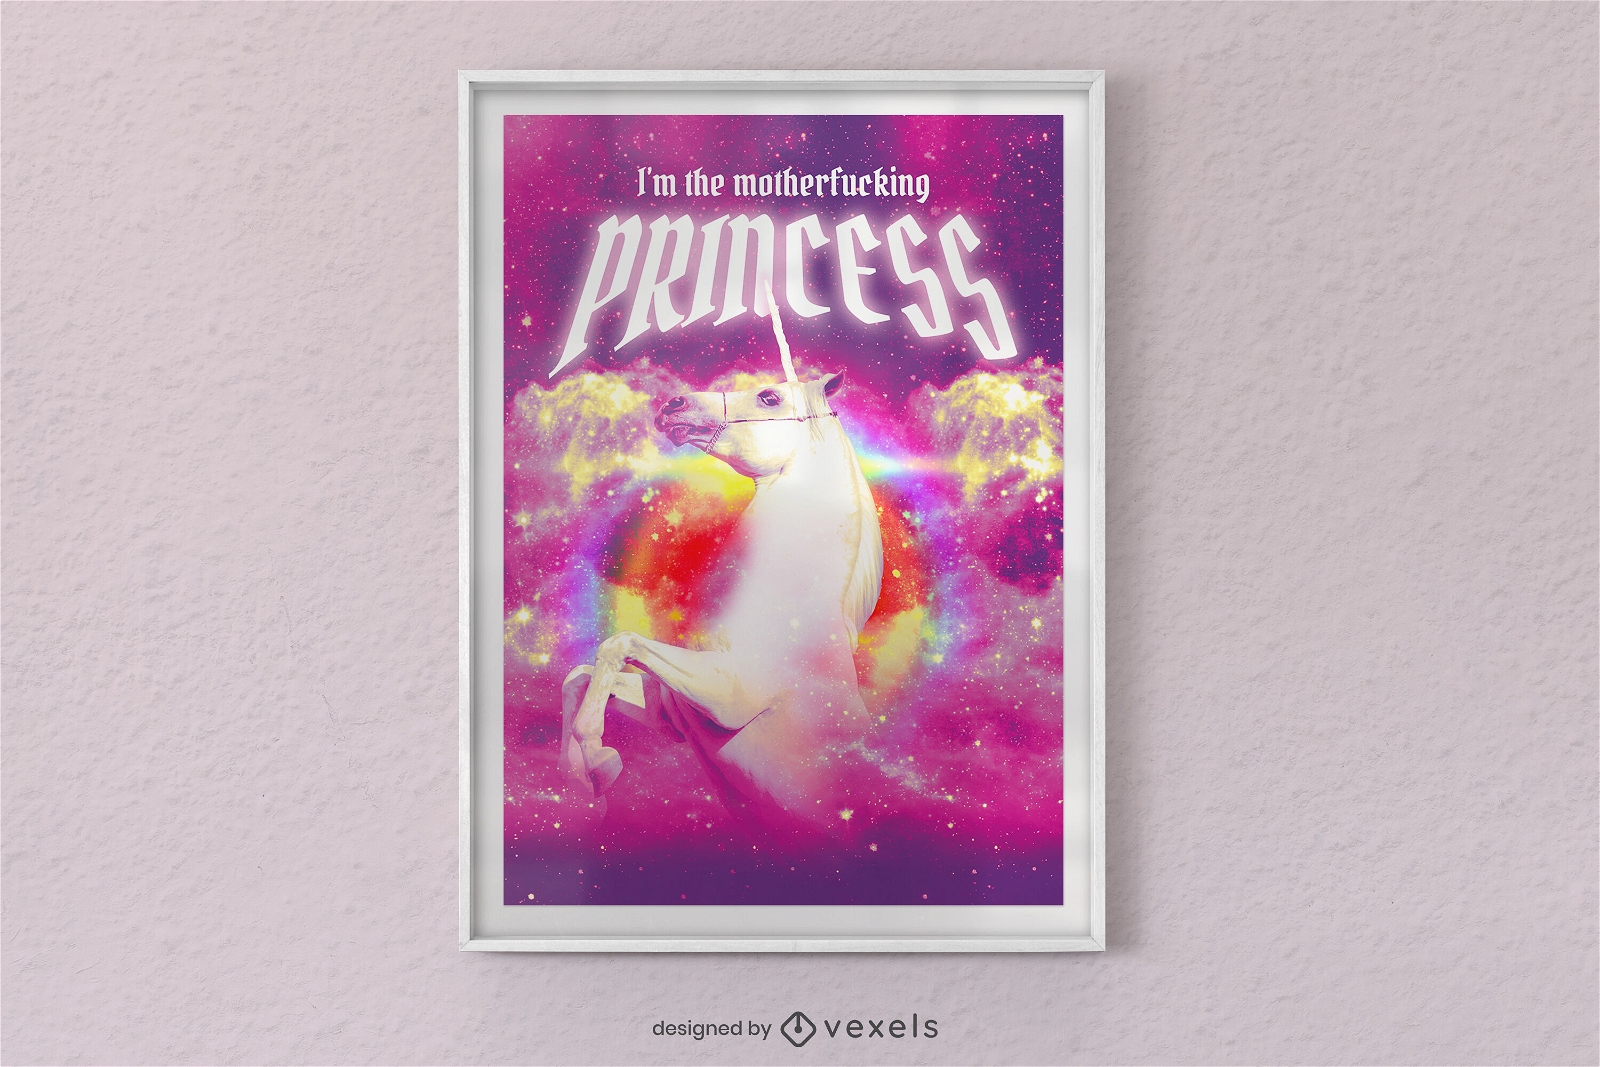 Unicorn creature in galaxy poster design